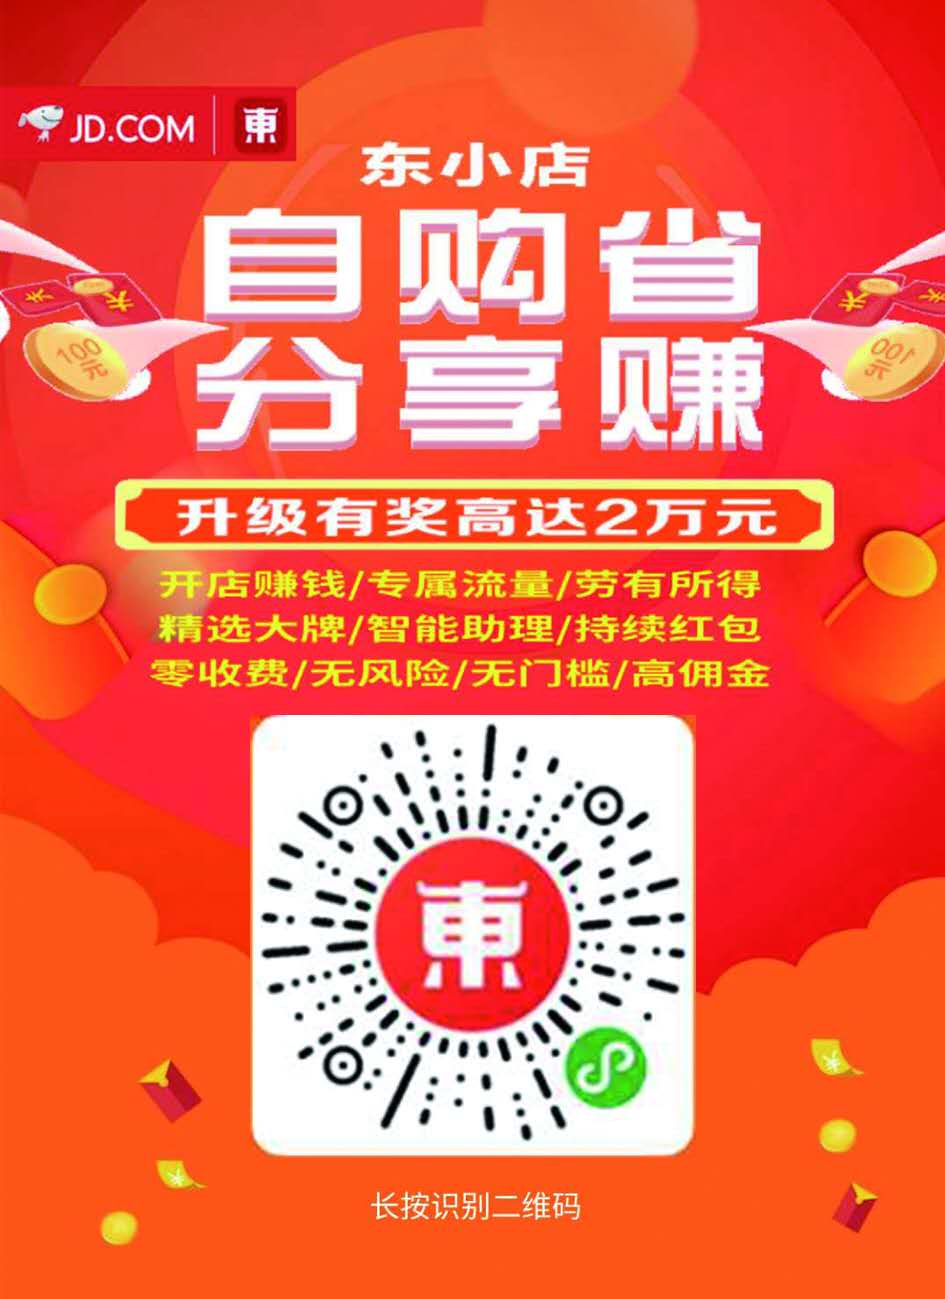 三帅六将淘小铺官网_分享赚钱服务项目合作代理-南京平头金计算机有限公司